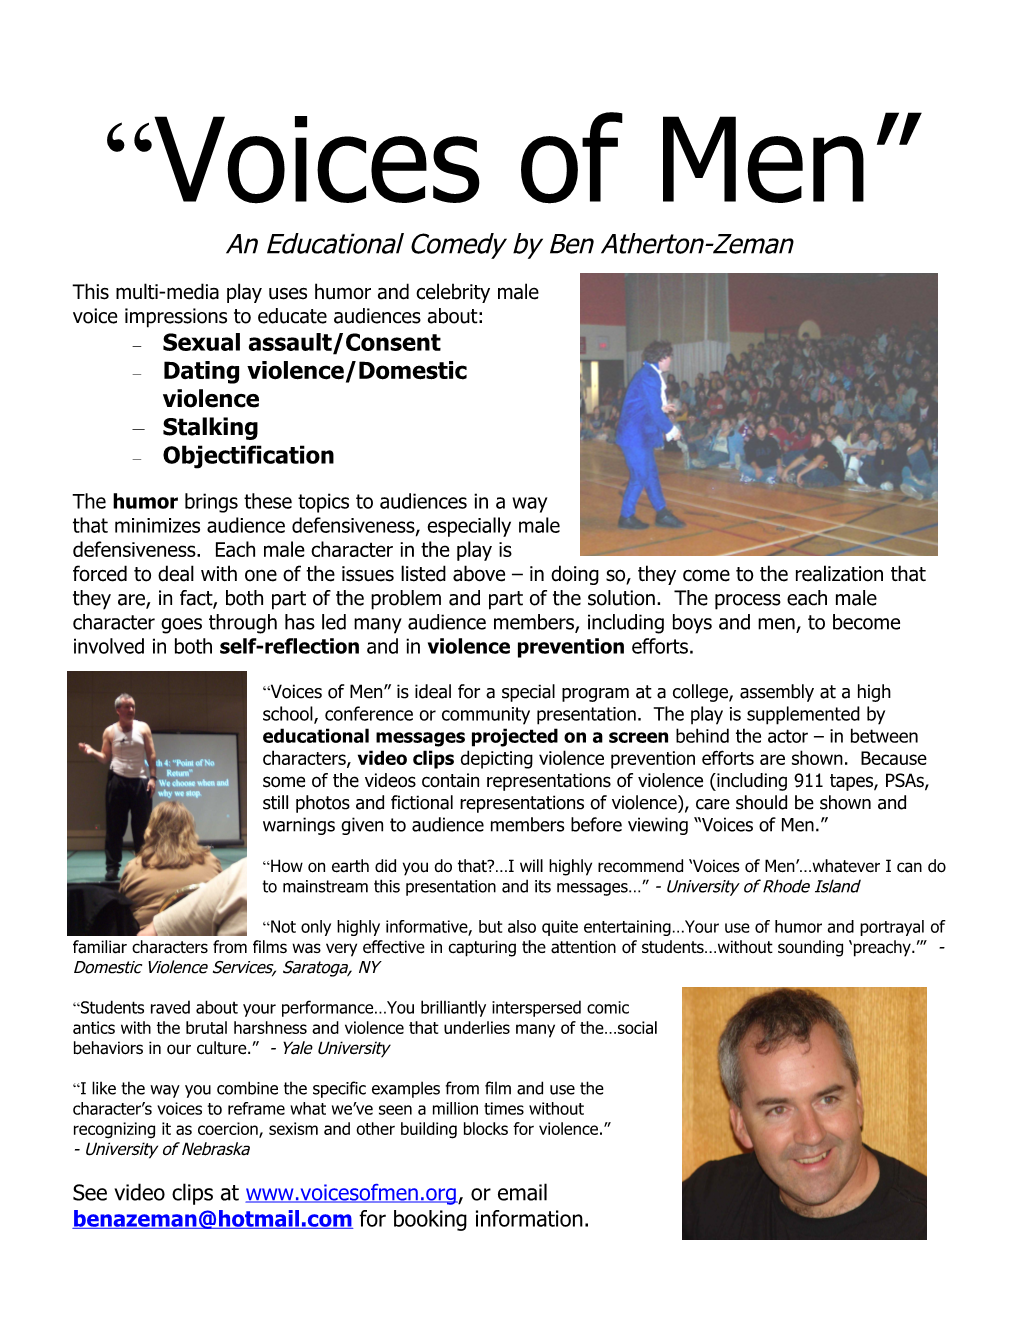 Voices of Men